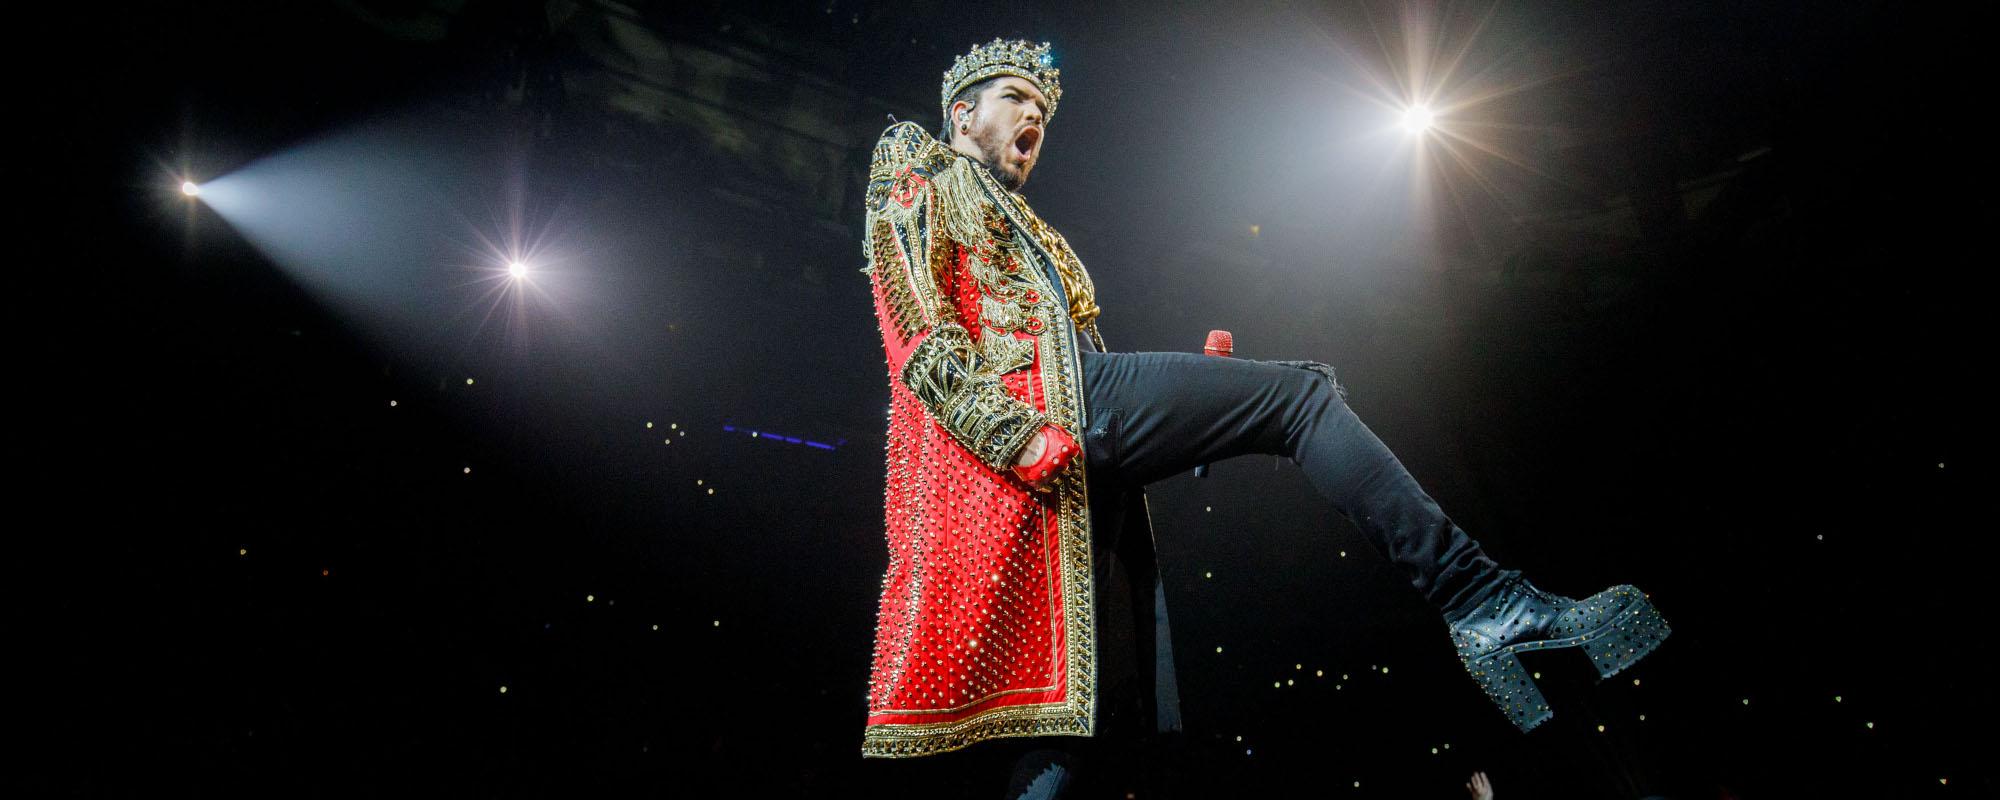 Queen + Adam Lambert Perform “Nessun Dorma” at Italy Show